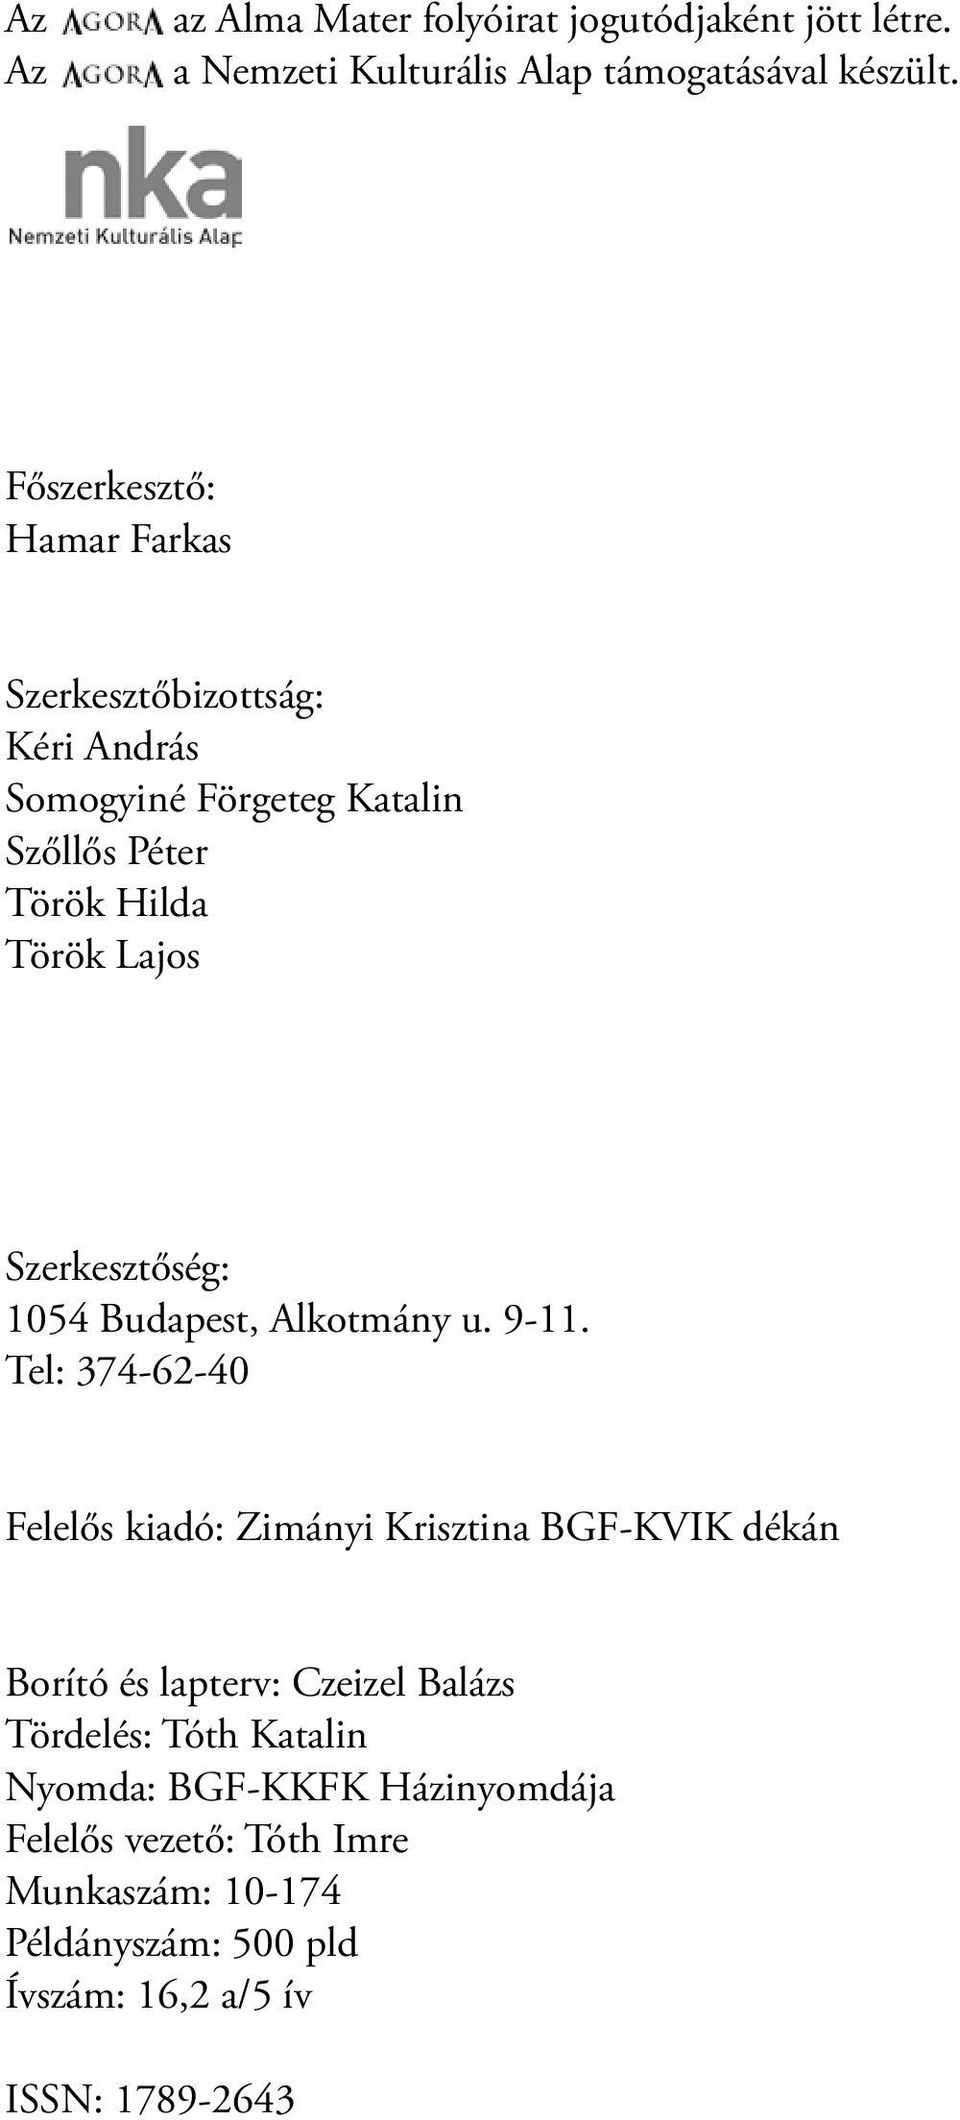 Szerkesztőség: 1054 Budapest, Alkotmány u. 9-11.